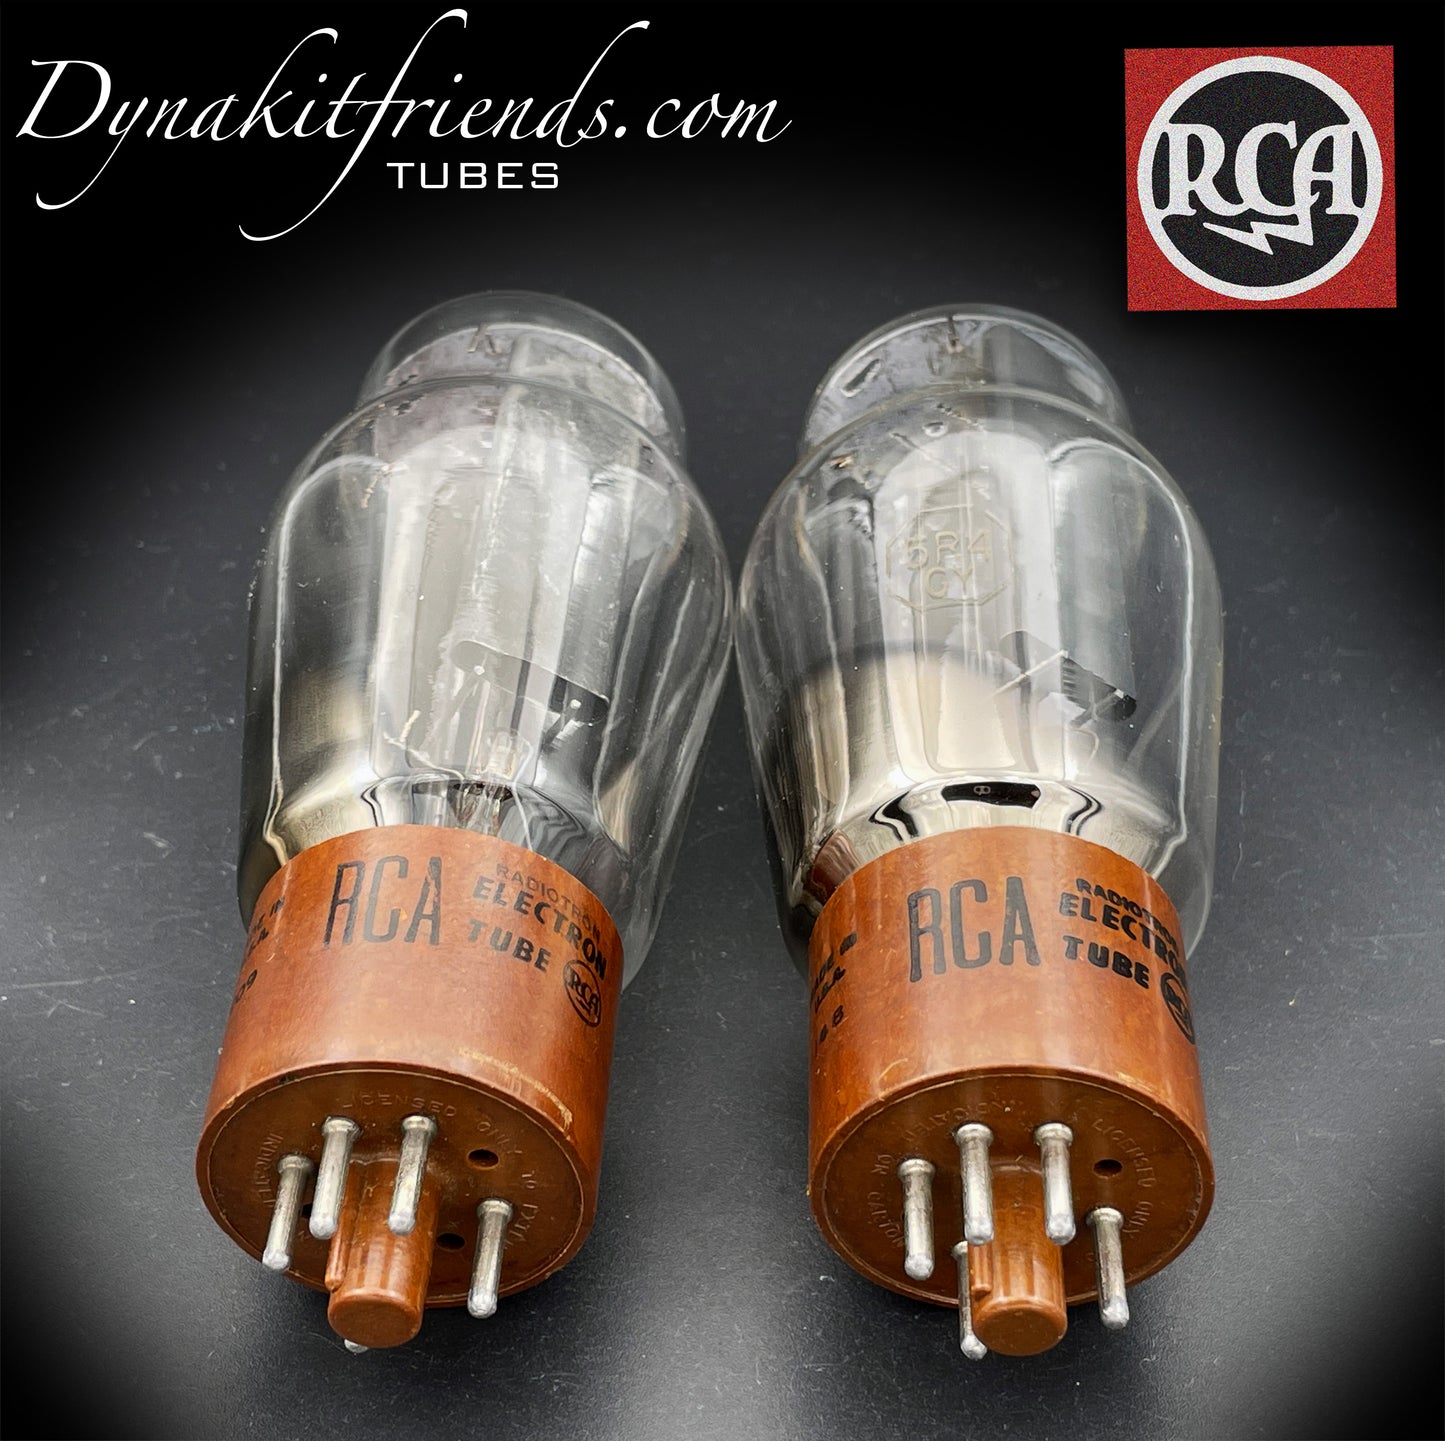 5R4GY (CV717) Rectificadores de tubos combinados Getter de fondo cuadrado con placas negras RCA fabricados en EE. UU. Años 50